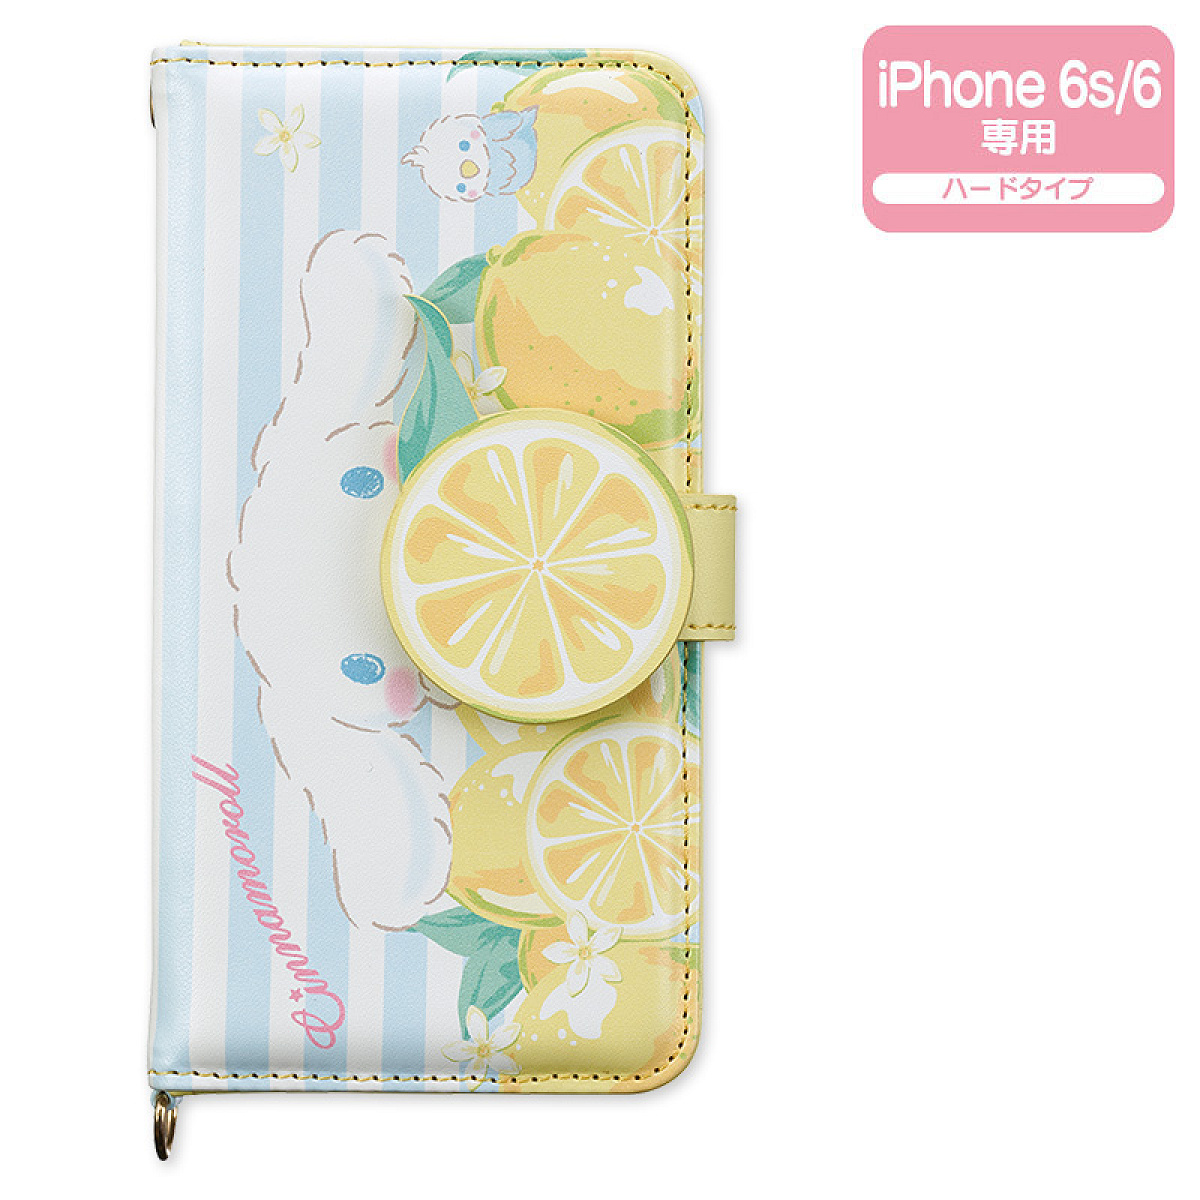 シナモロール iPhone 6s/6ケース(レモン)